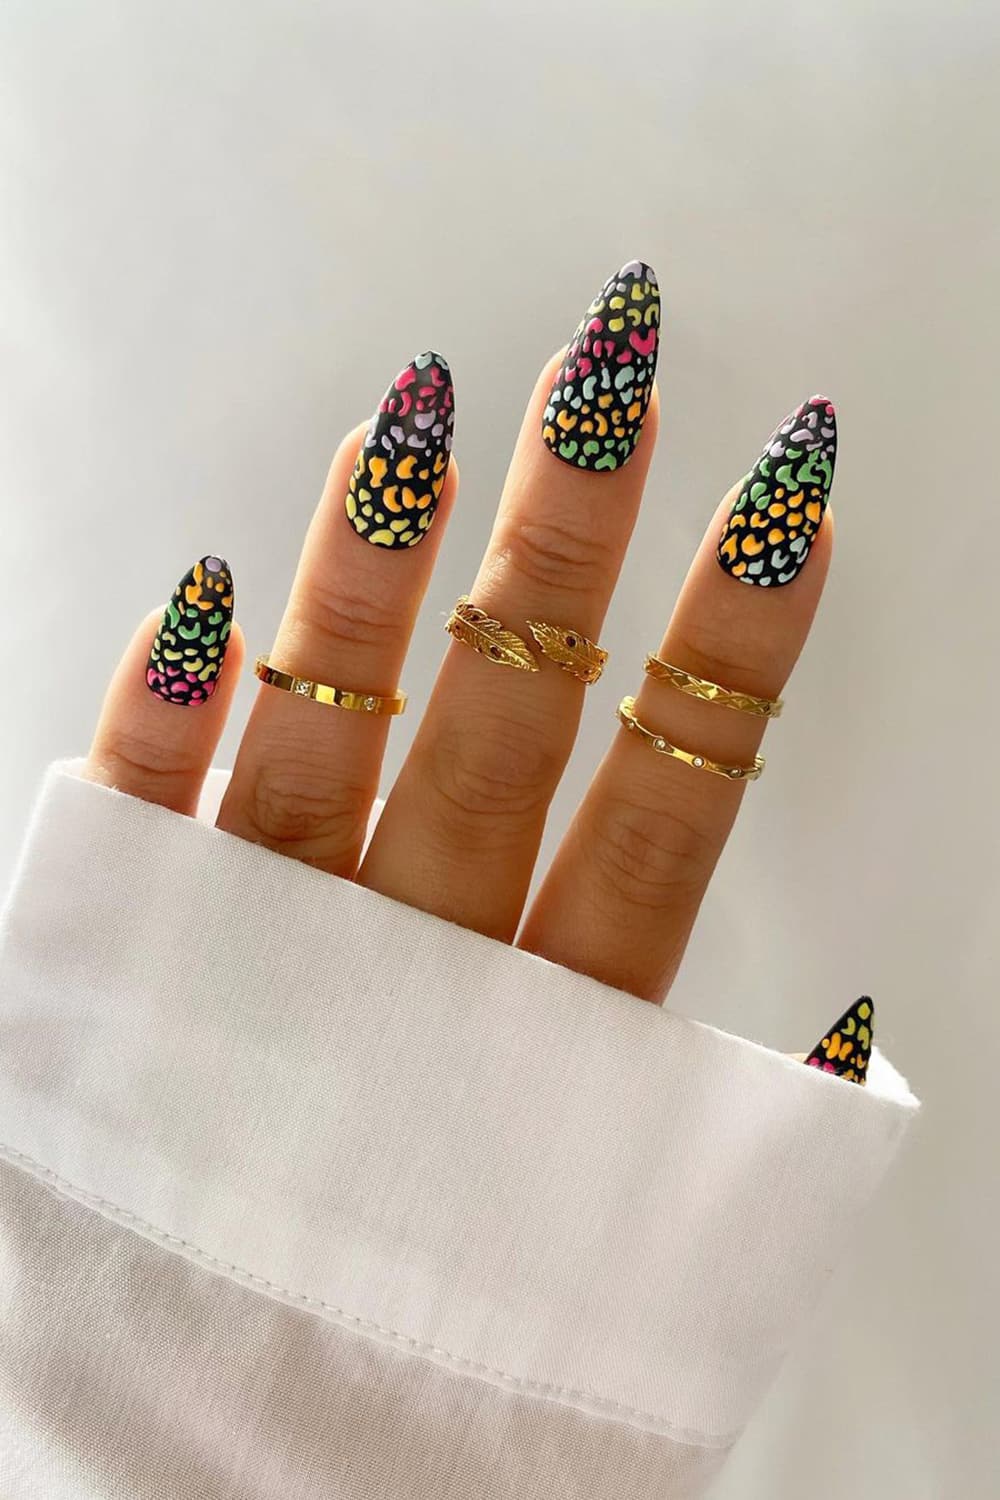 Wild color leopard nails